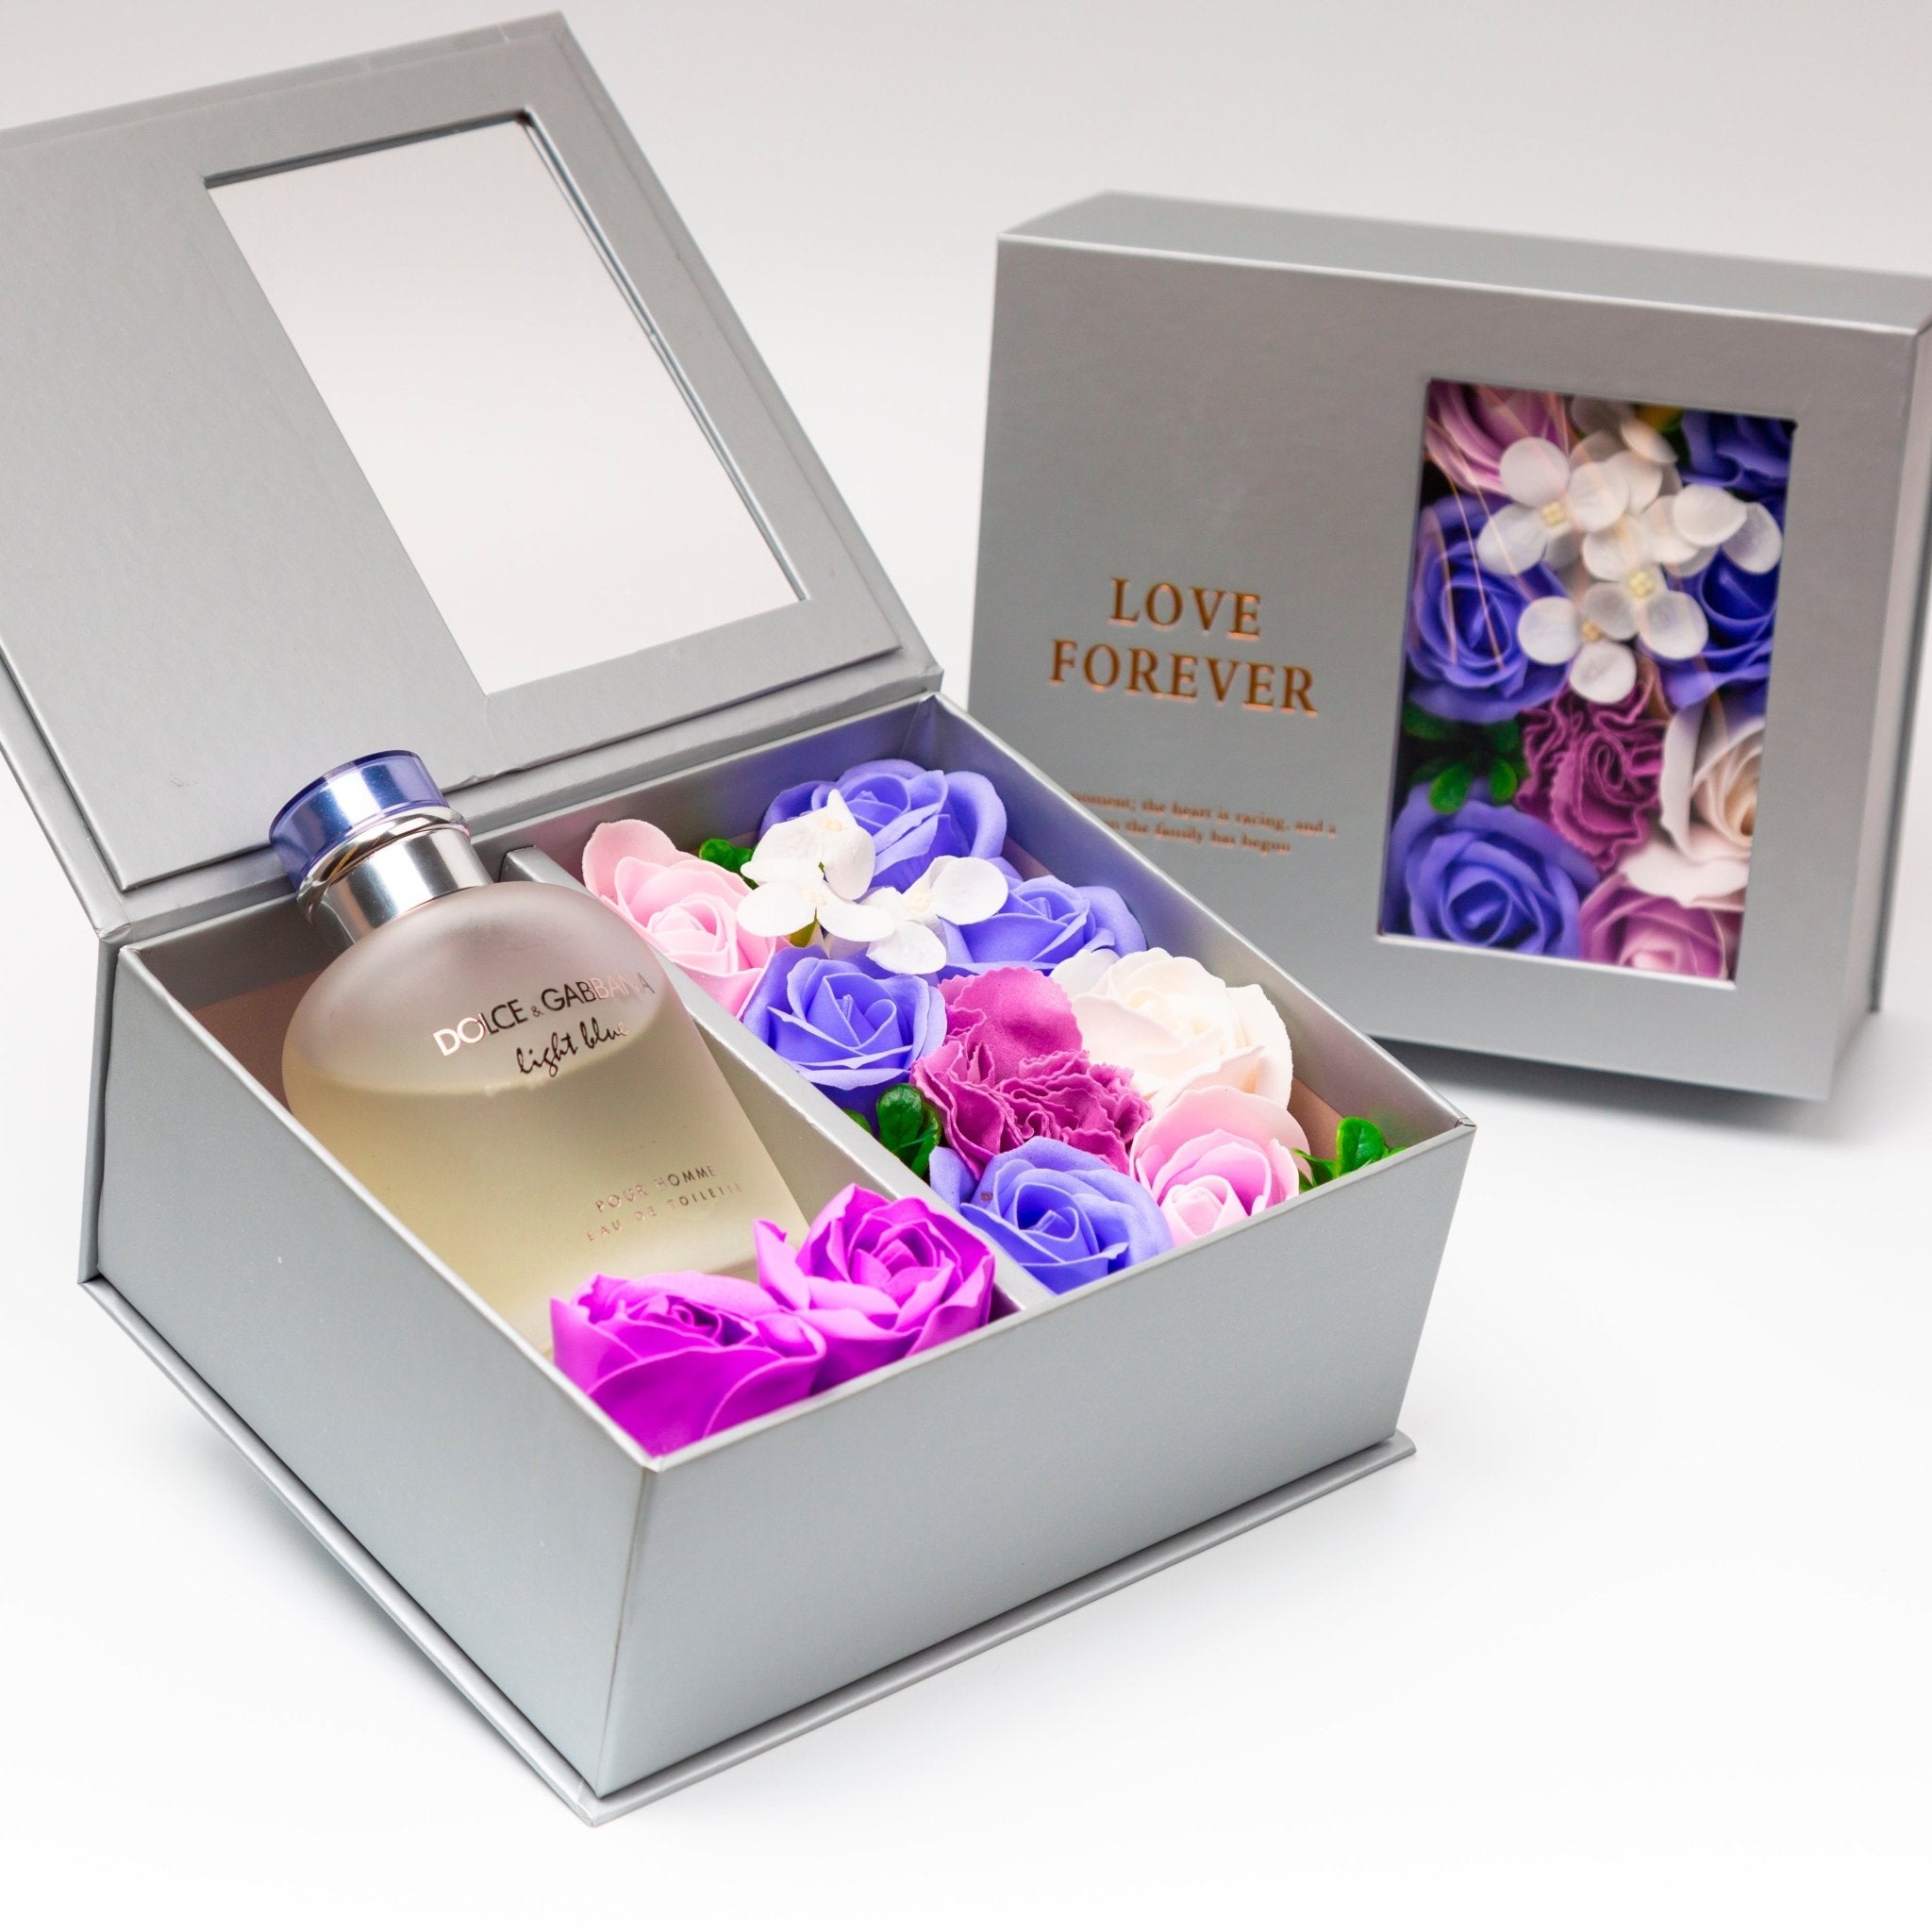 Flower Box - Perfume Gift For Men 3 - #shoFlower Box - Perfume Gift For Men 3p_name#Flower Box - Perfume Gift For Men 3Gift Boxes & TinsTakreemTakreem.joMenPerfumeFlower Box - Perfume Gift For Men 3 - Takreem.jo